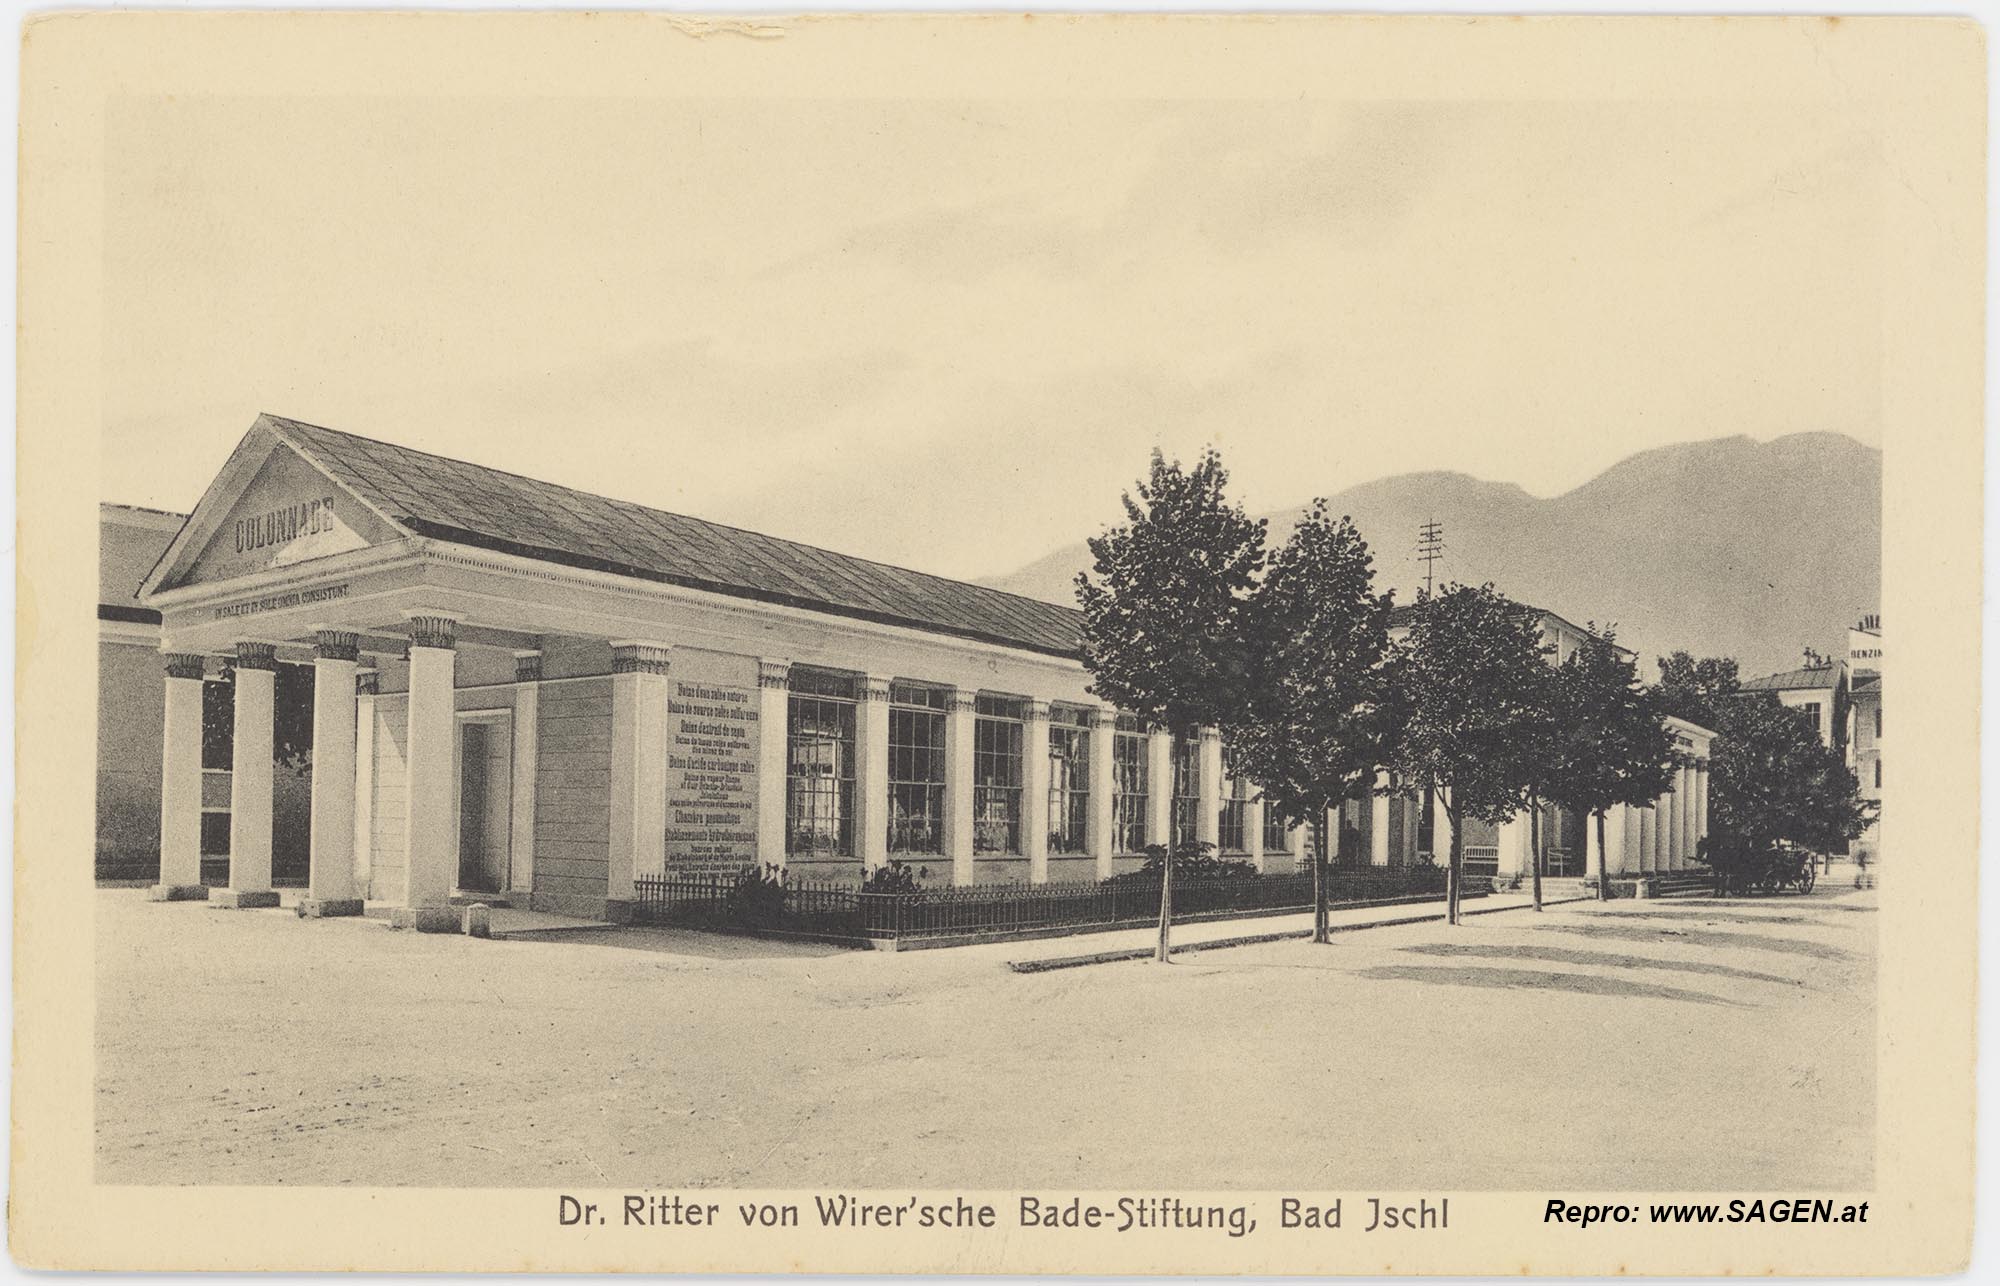 Dr. Ritter von Wirer'sche Bade-Stiftung, Bad Ischl